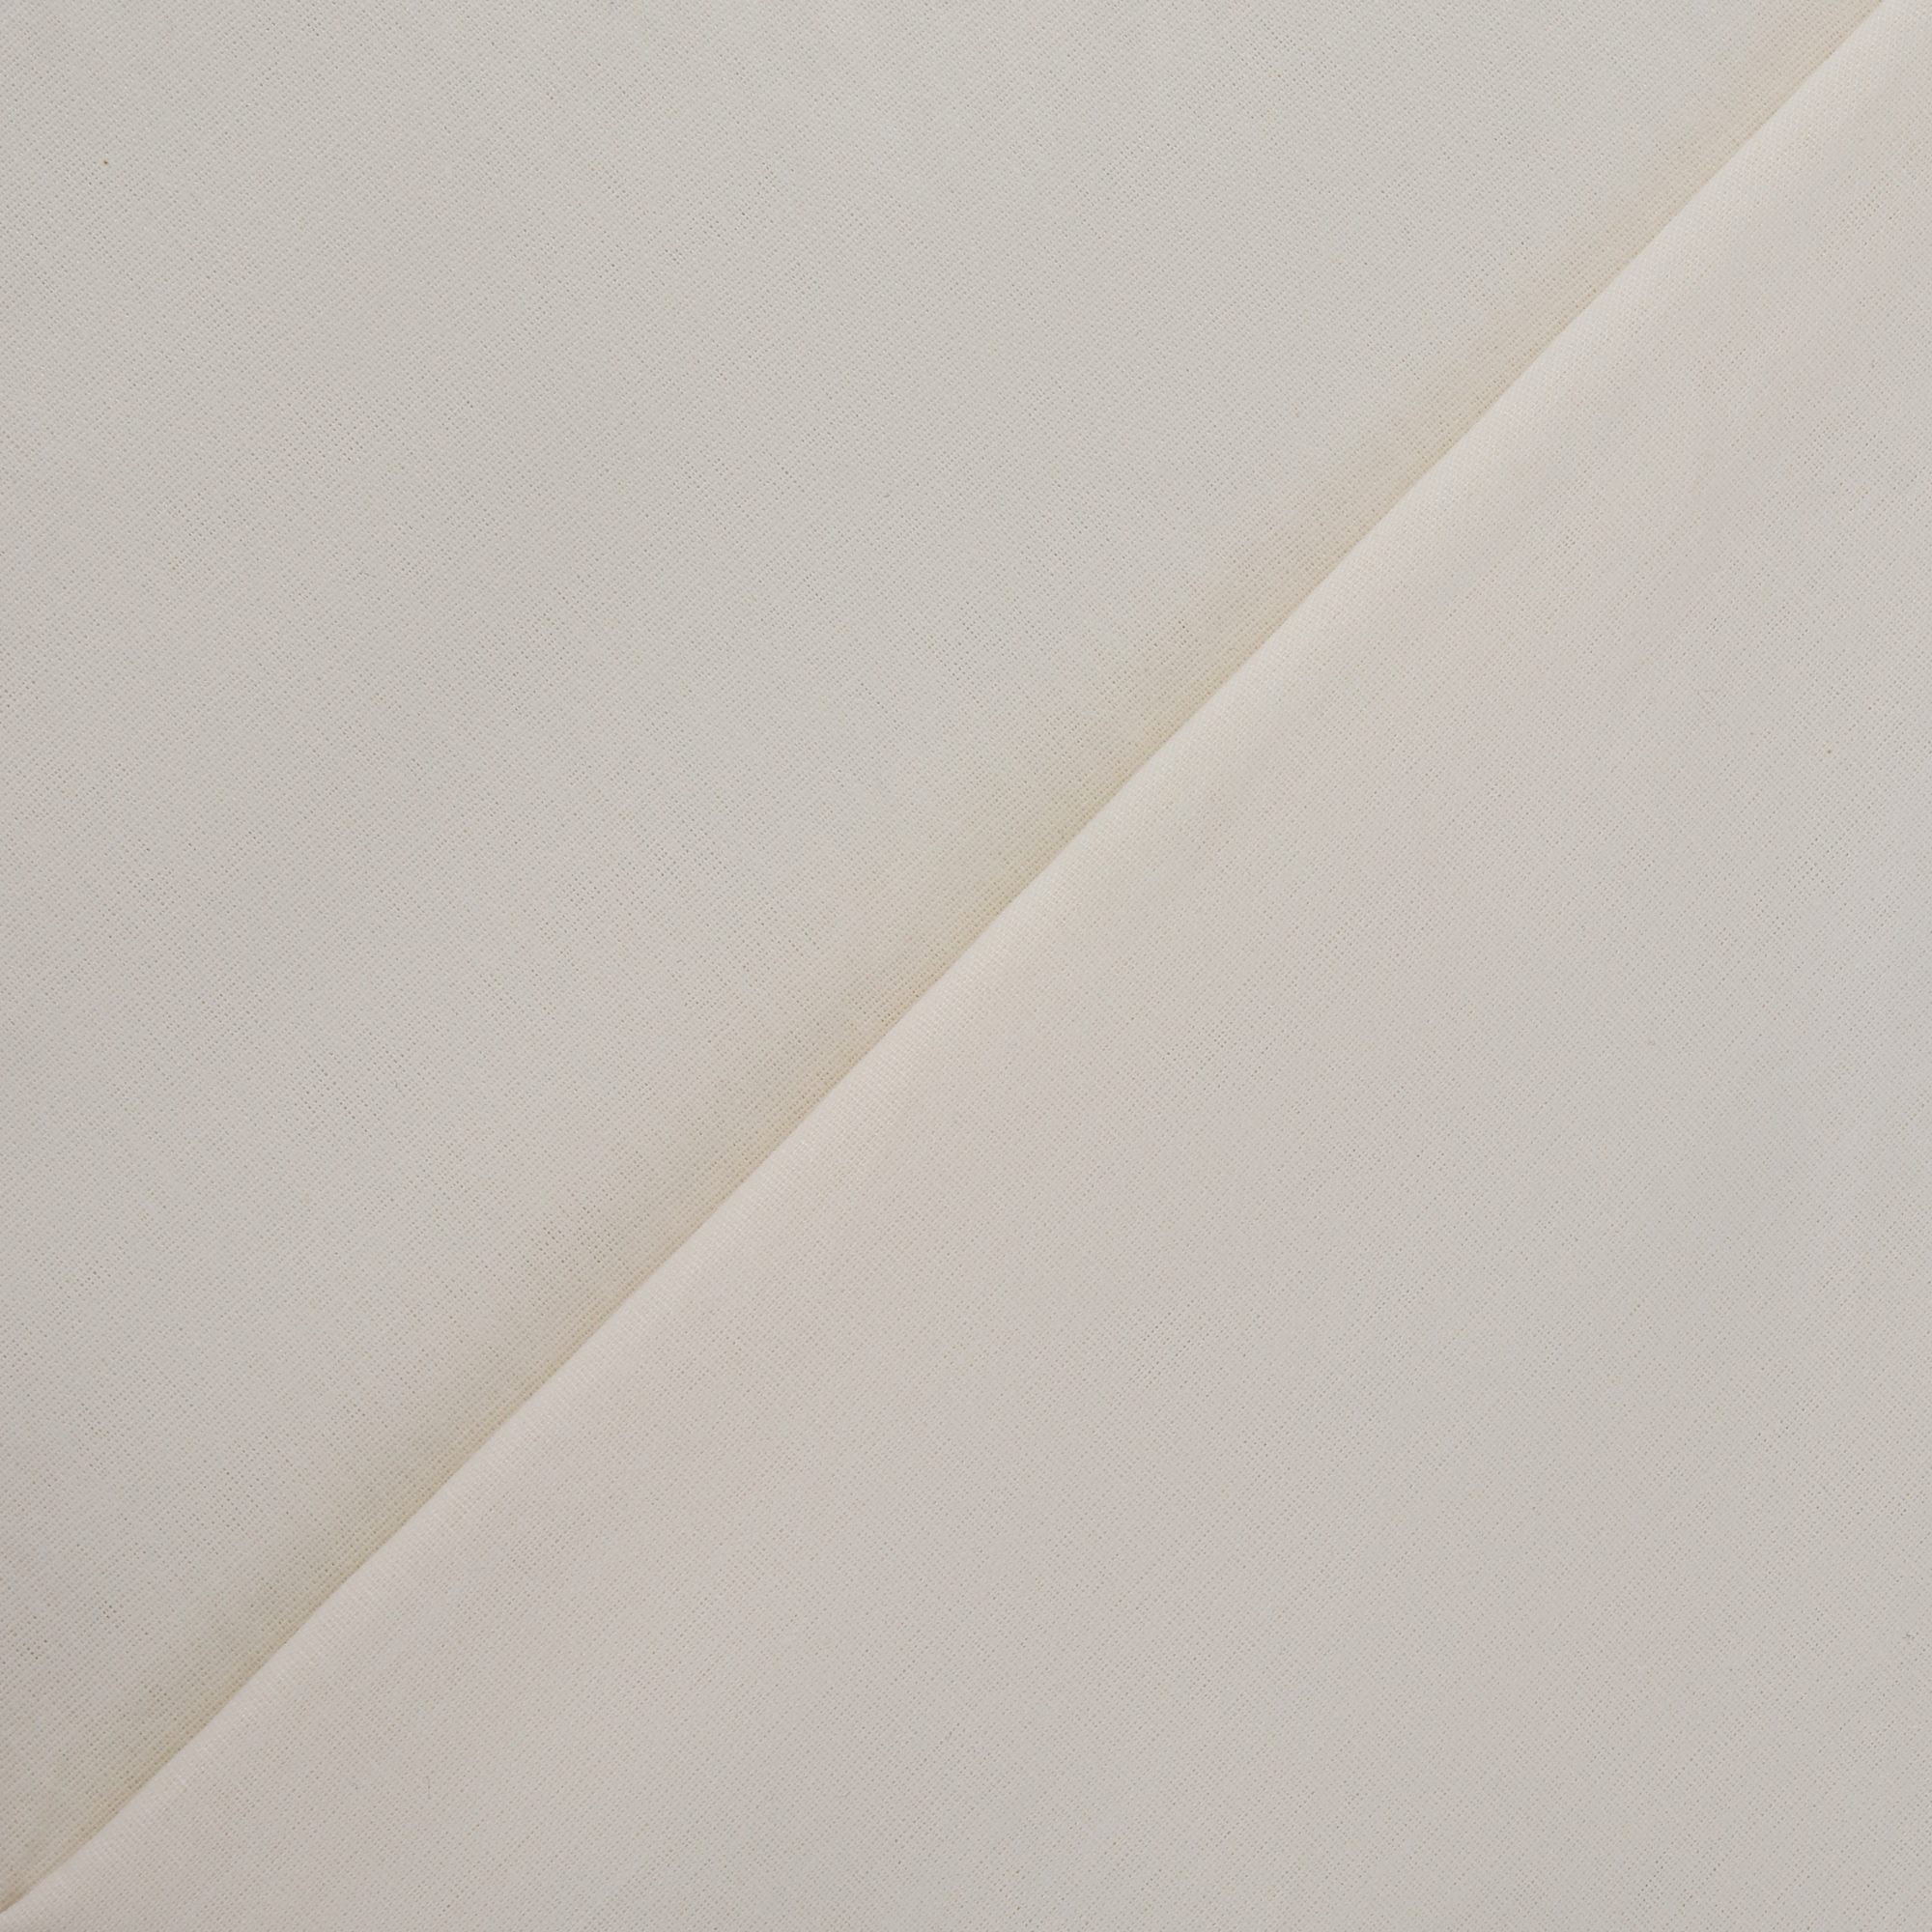 Комплект постельного белья La Besse Ранфорс кремовый Кинг сайз, размер Кинг сайз - фото 3